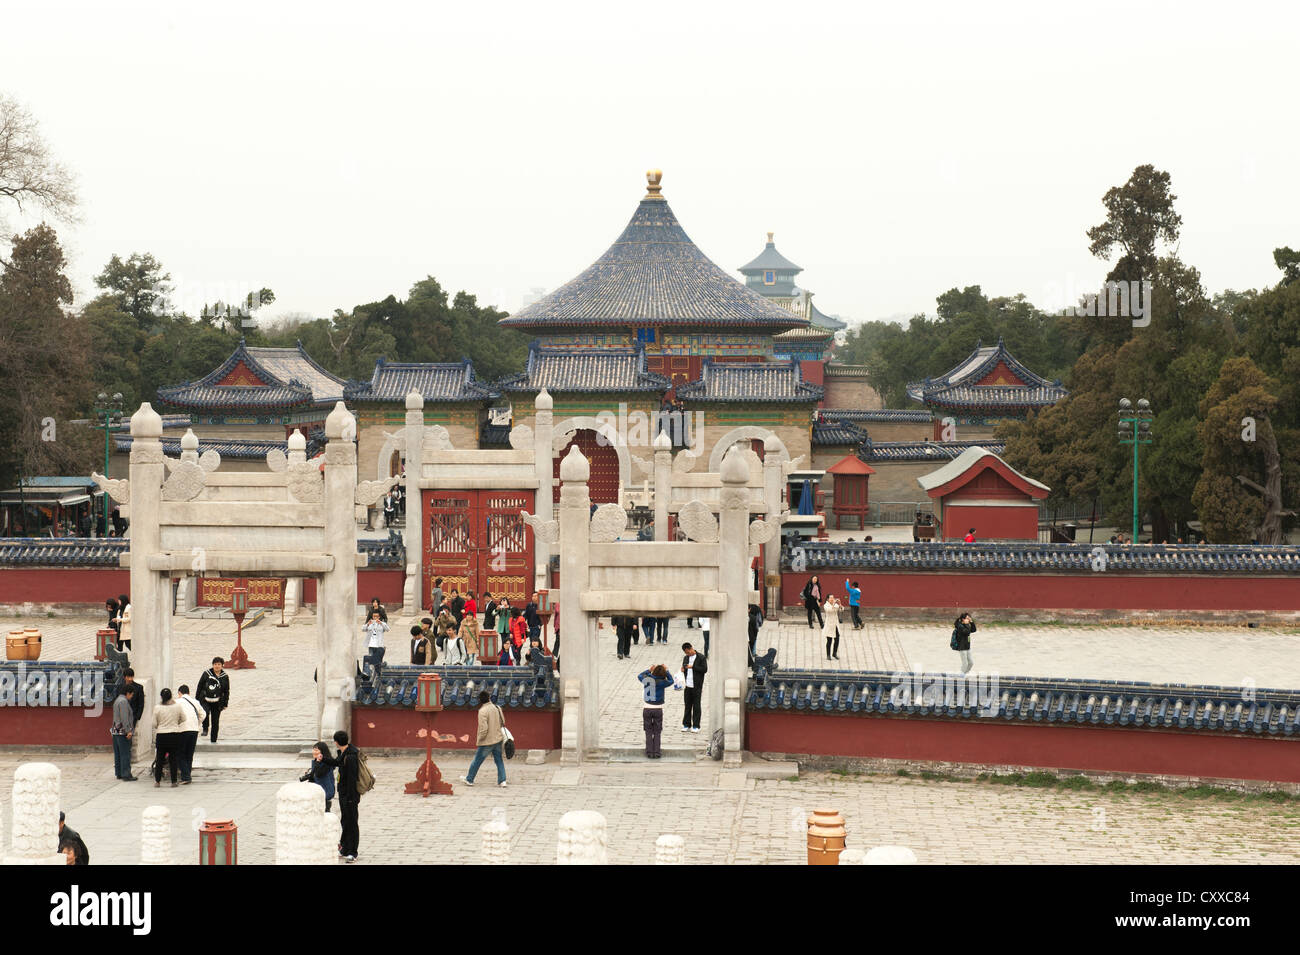 Himmelstempel, Beijing. Blick vom Altar runden Hügel auf das kaiserliche Himmelsgewölbe. Stockfoto